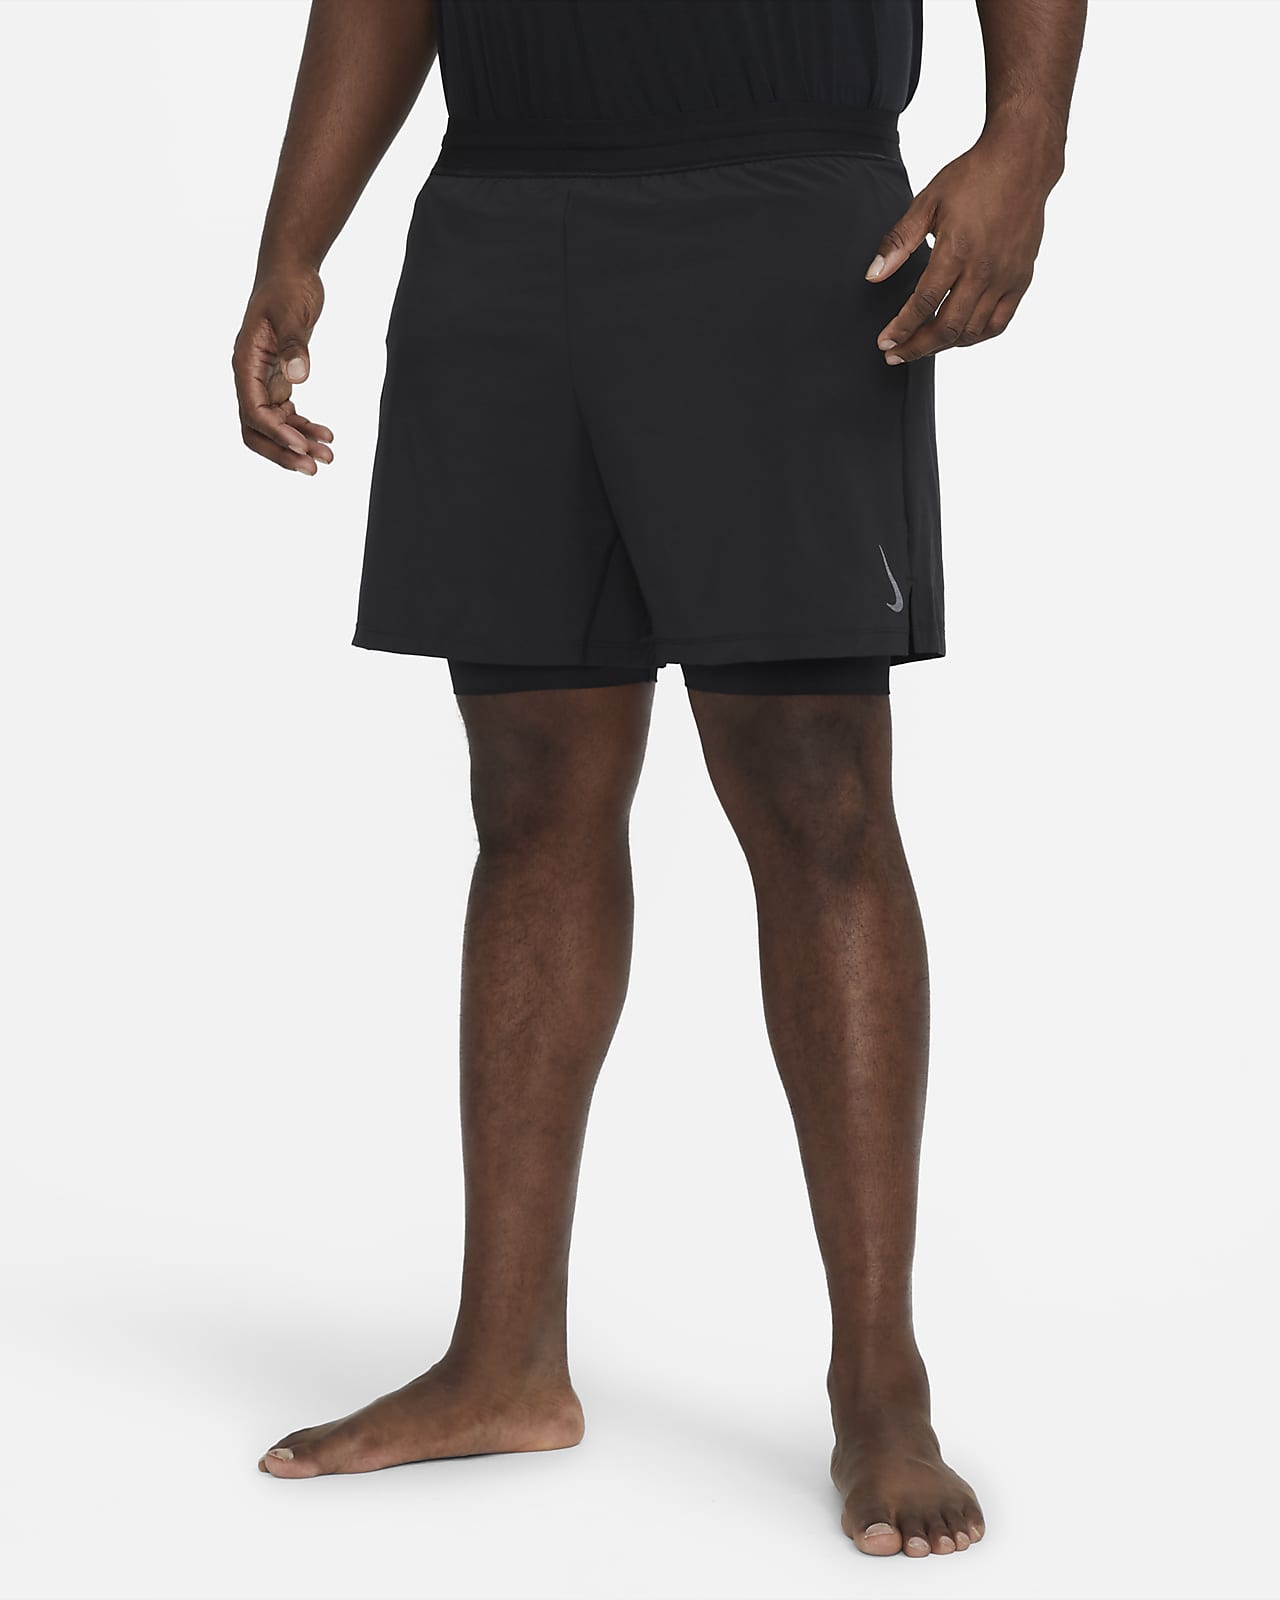 Nike, Yoga Dri-FIT Men's Shorts, Performance Shorts